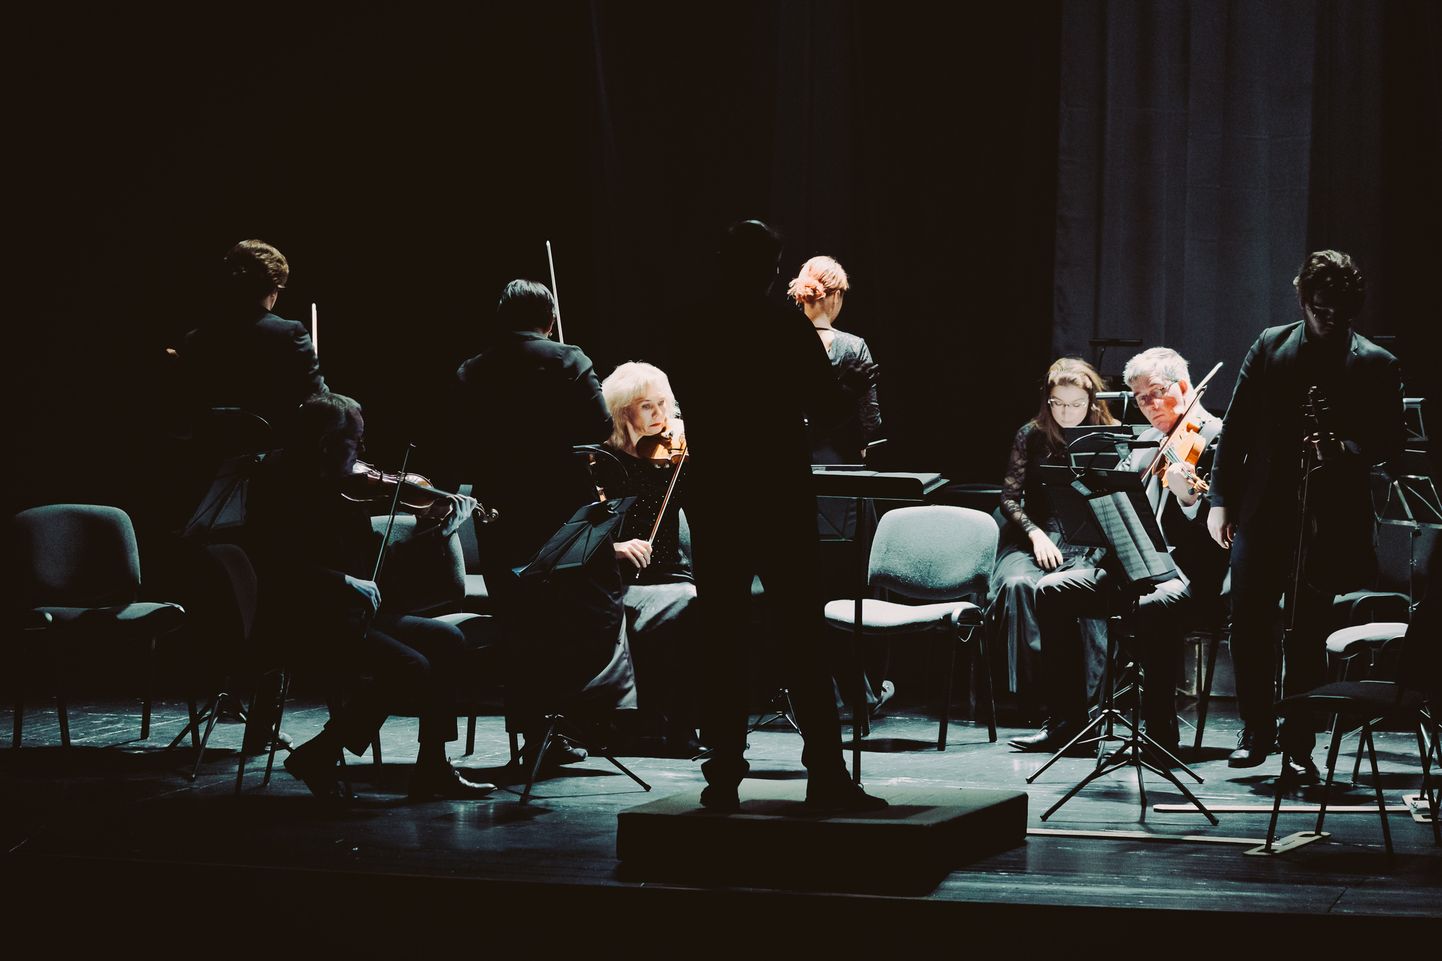 Финал "Прощальной симфонии" Йозефа Гайдна в исполнении Нарвского симфонического оркестра, музыканты которого покидали сцену один за другим, оставляя зал в темноте.